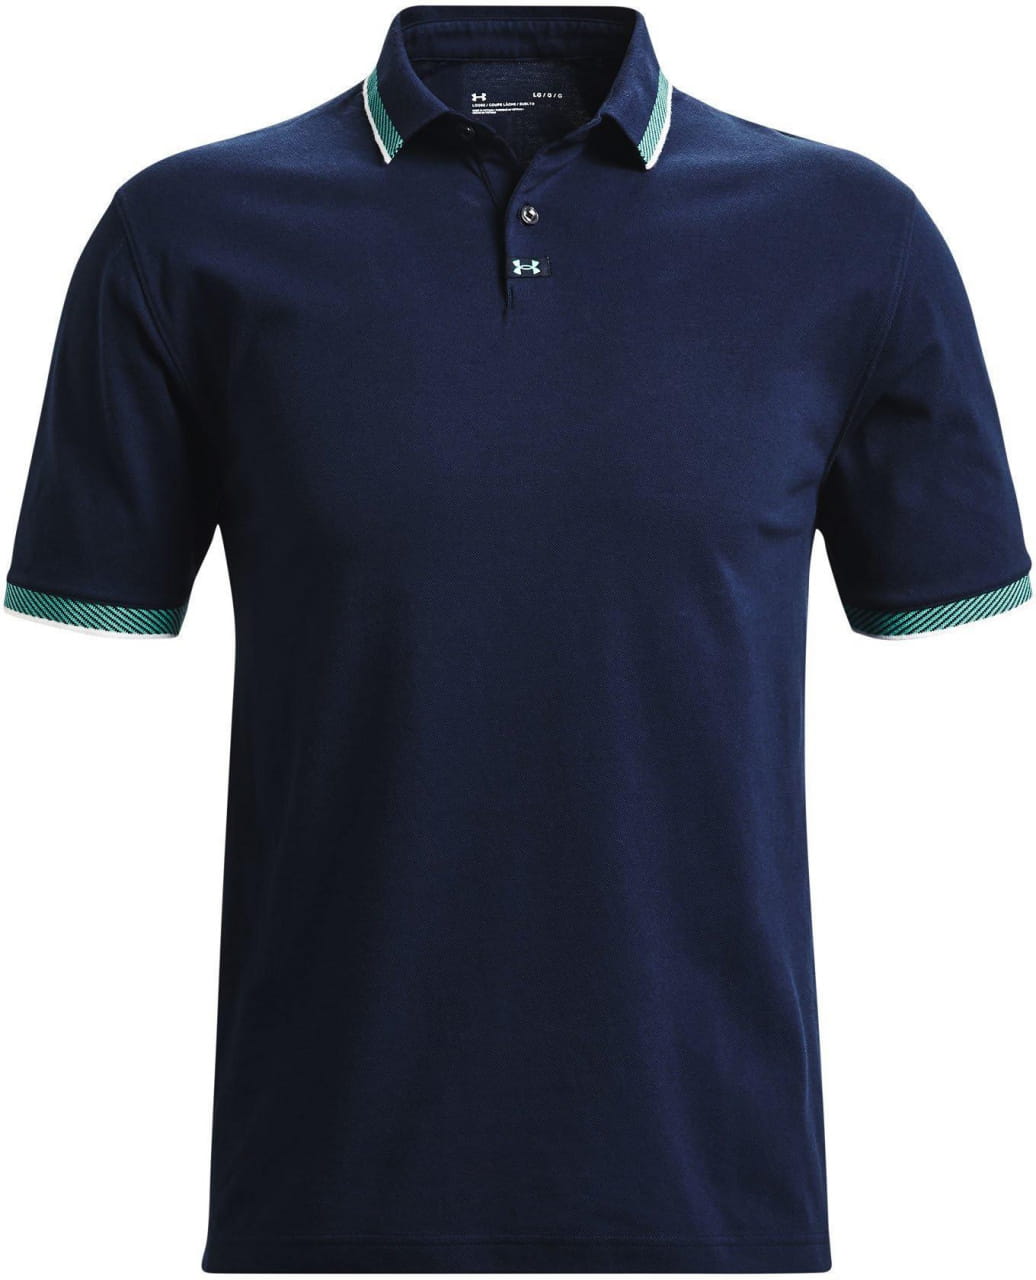 Golfhemd für Männer Under Armour Ace Polo-NVY